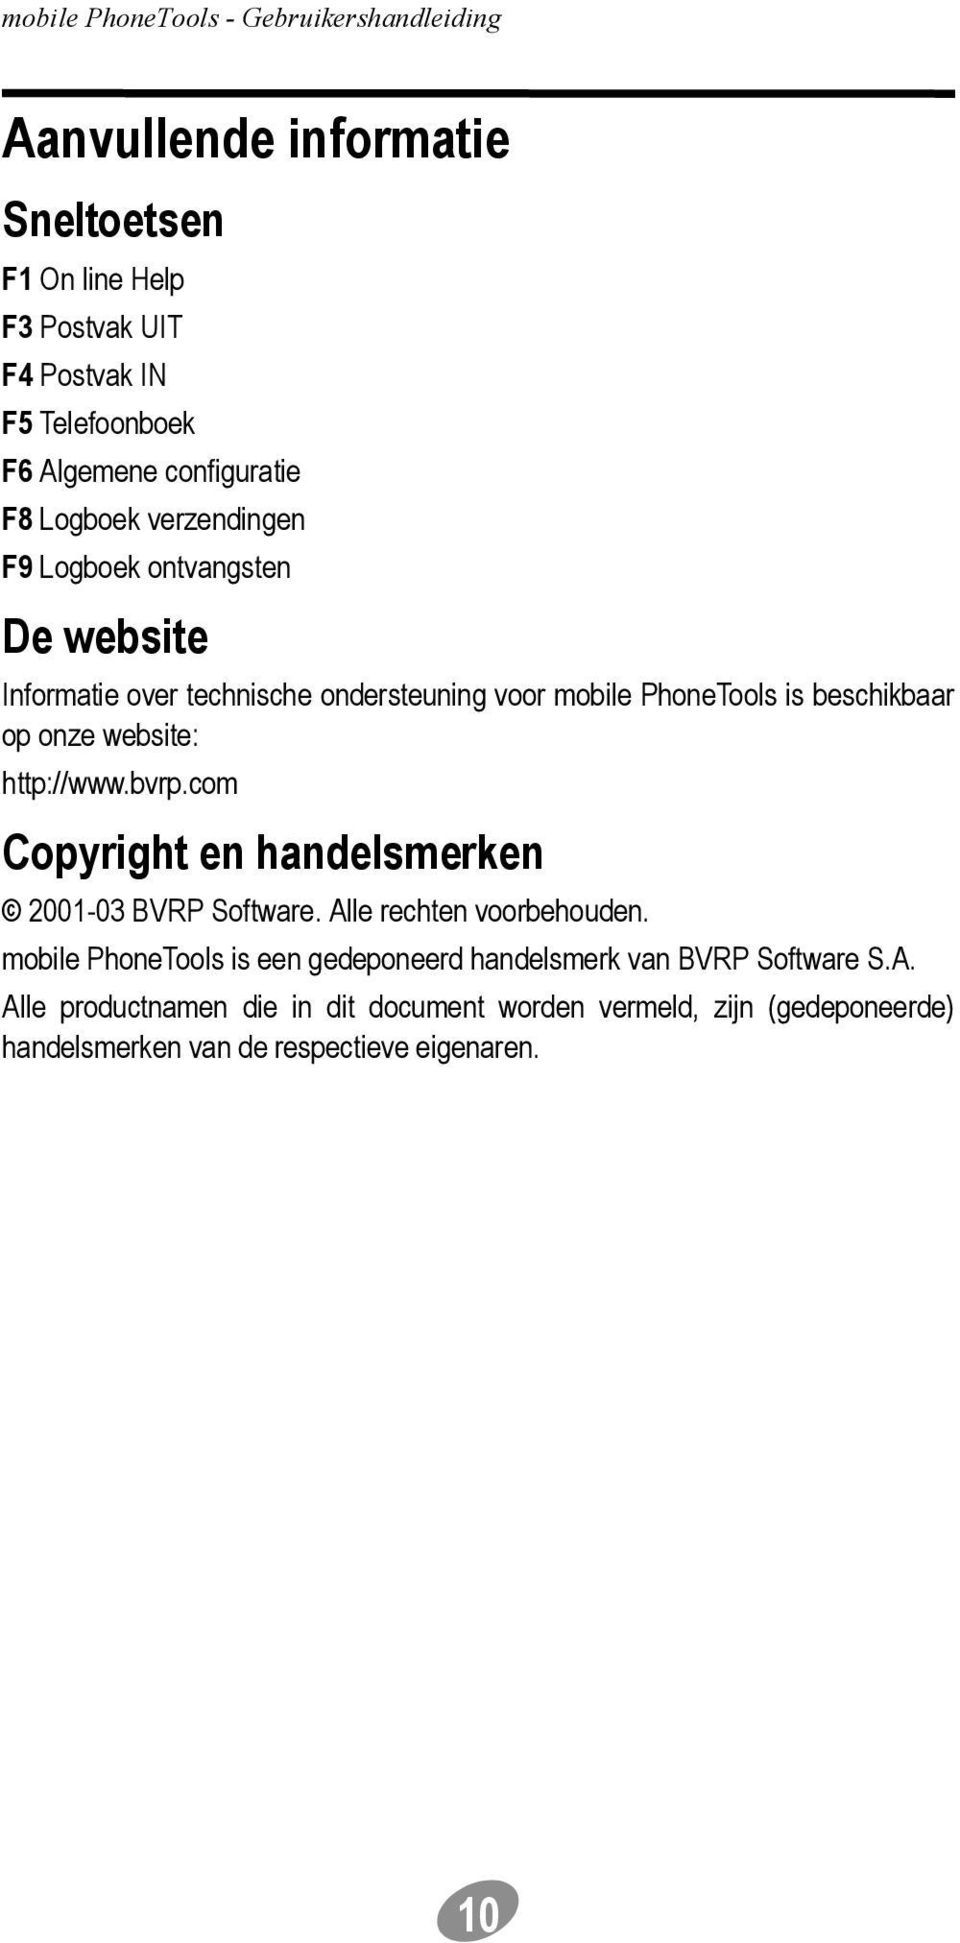 website: http://www.bvrp.com Copyright en handelsmerken 2001-03 BVRP Software. Alle rechten voorbehouden.